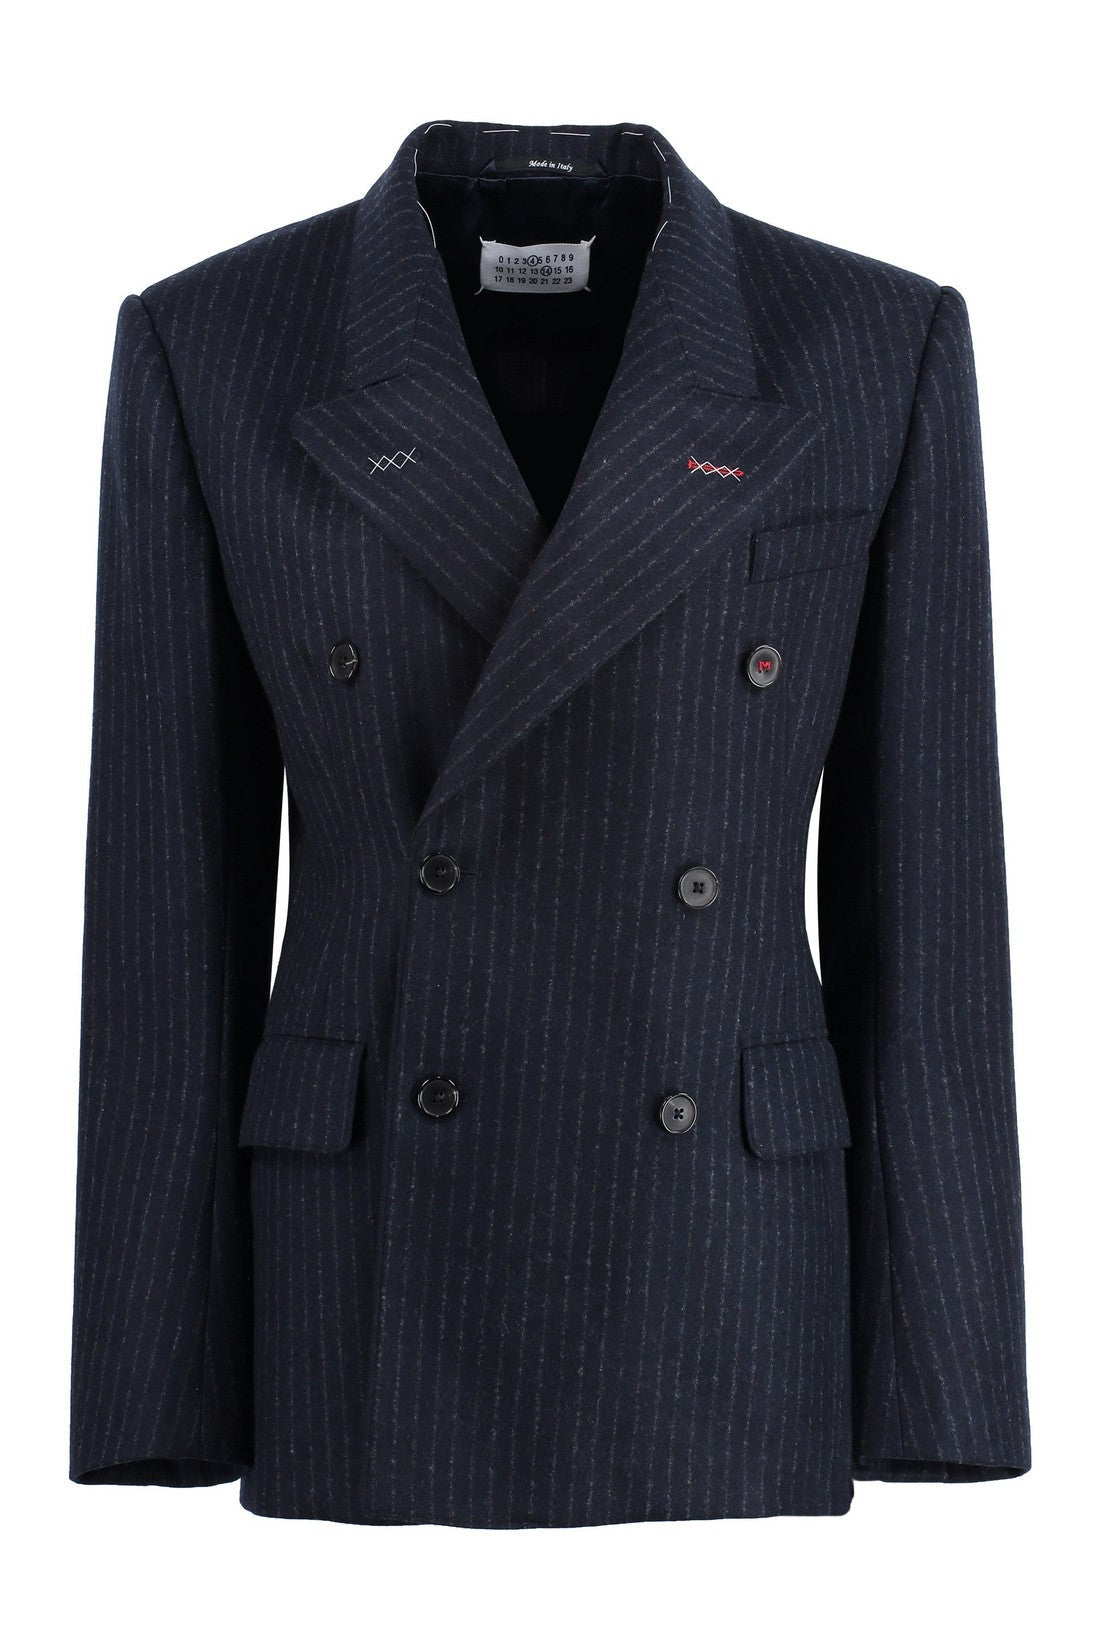 Maison Margiela-OUTLET-SALE-Wool blend pinstripe jacket-ARCHIVIST